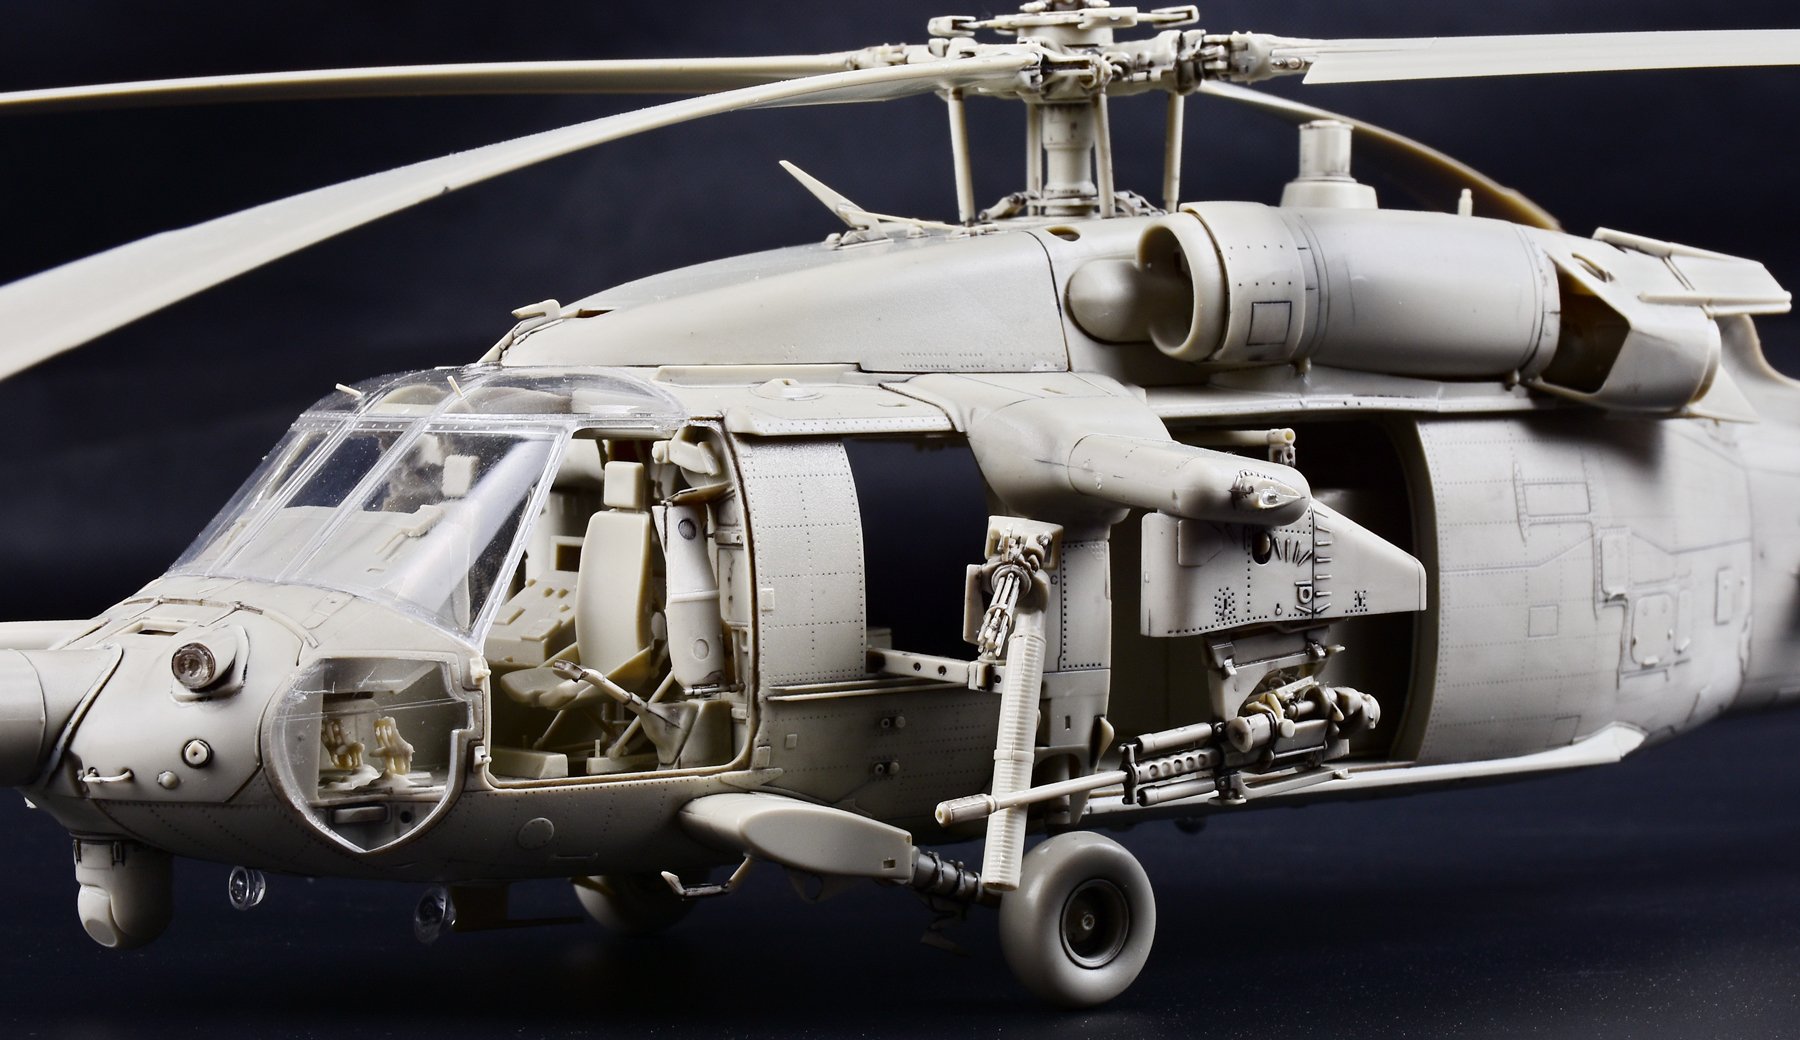 1/35 MH-60L 黑鹰直升机 - 点击图像关闭